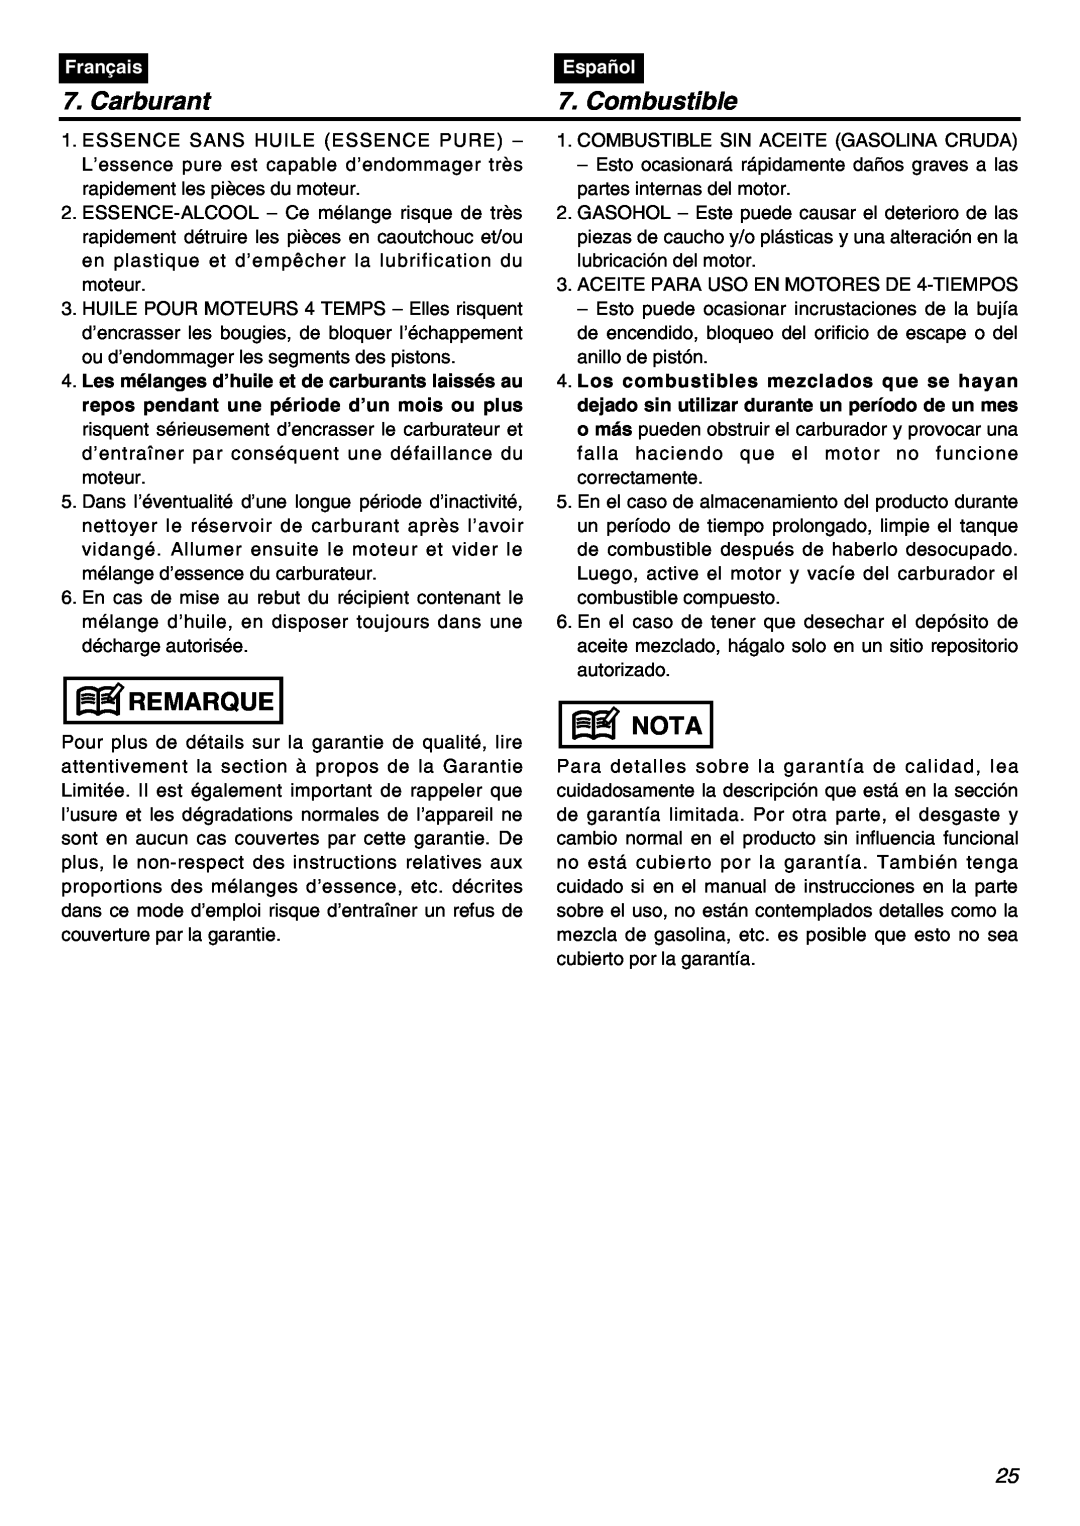 RedMax BCZ2401S-CA manual Carburant, Combustible, Remarque, Nota, Français, Español 